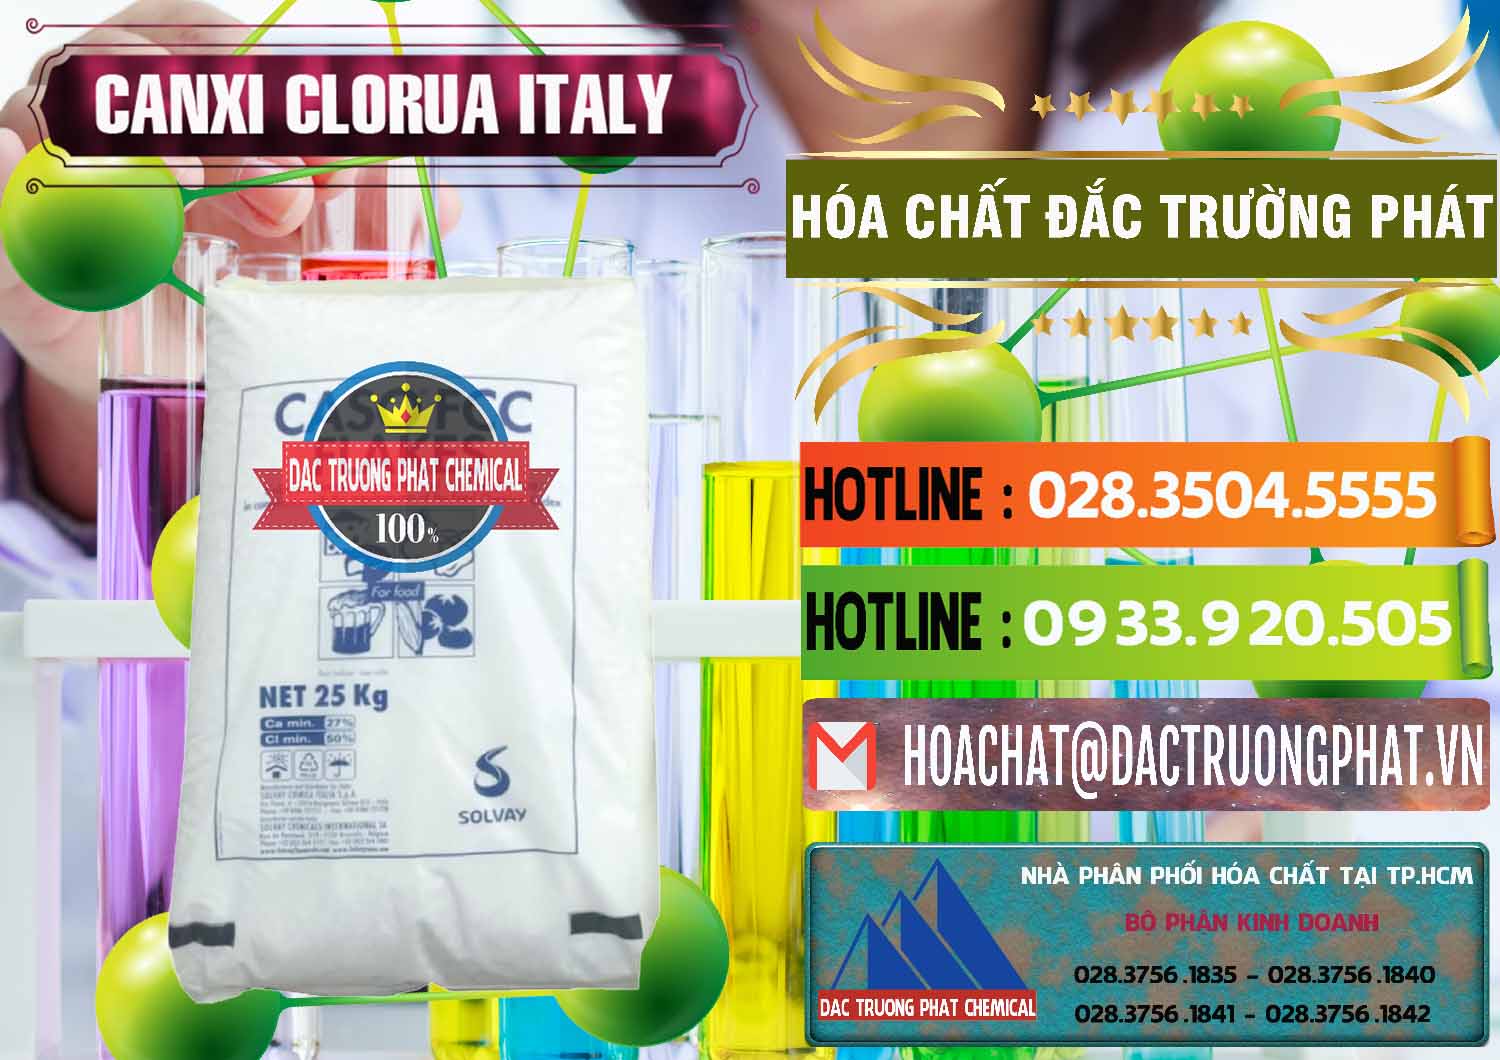 Cty chuyên kinh doanh và bán CaCl2 – Canxi Clorua Food Grade Ý Italy - 0435 - Nơi phân phối - cung cấp hóa chất tại TP.HCM - cungcaphoachat.com.vn